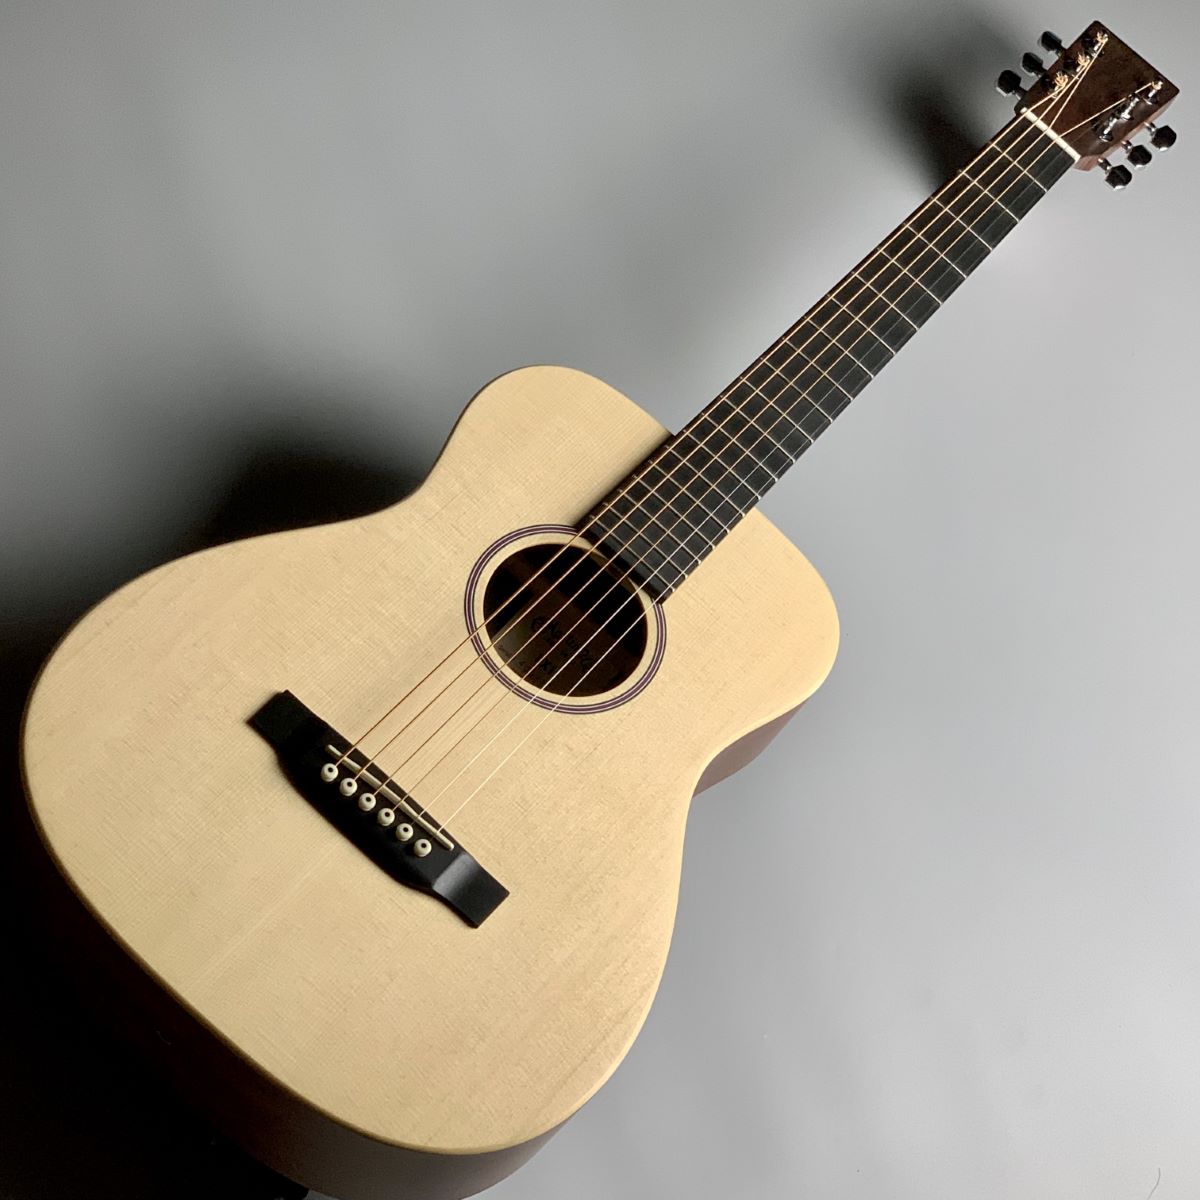 Martin LX1 ミニアコースティックギター【フォークギター】 【Little ...